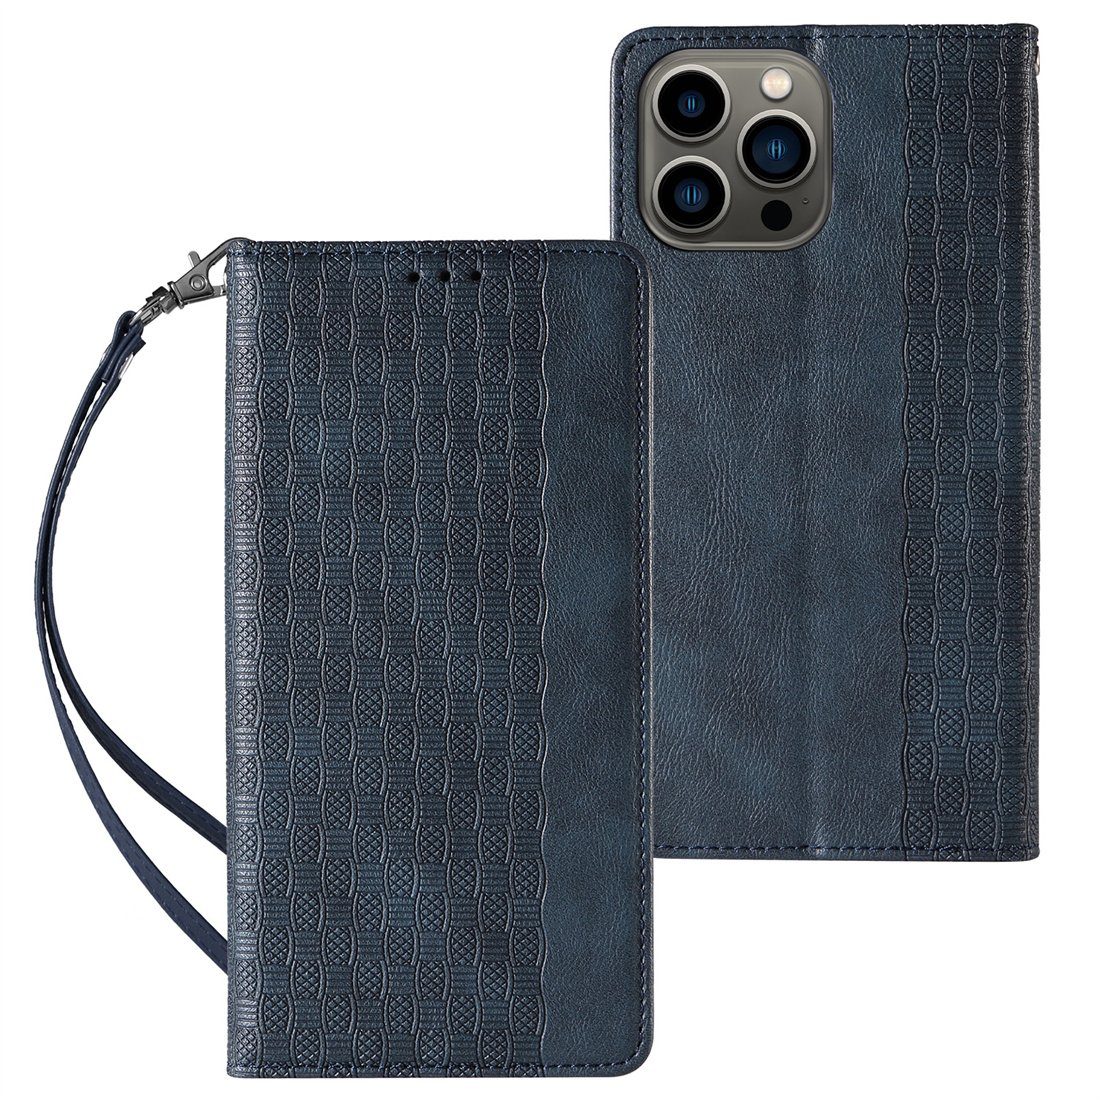 DÖRÖY Handytasche Handytasche für iPhone pro, Flip-Tasche, blau 15 Ledertasche geprägte